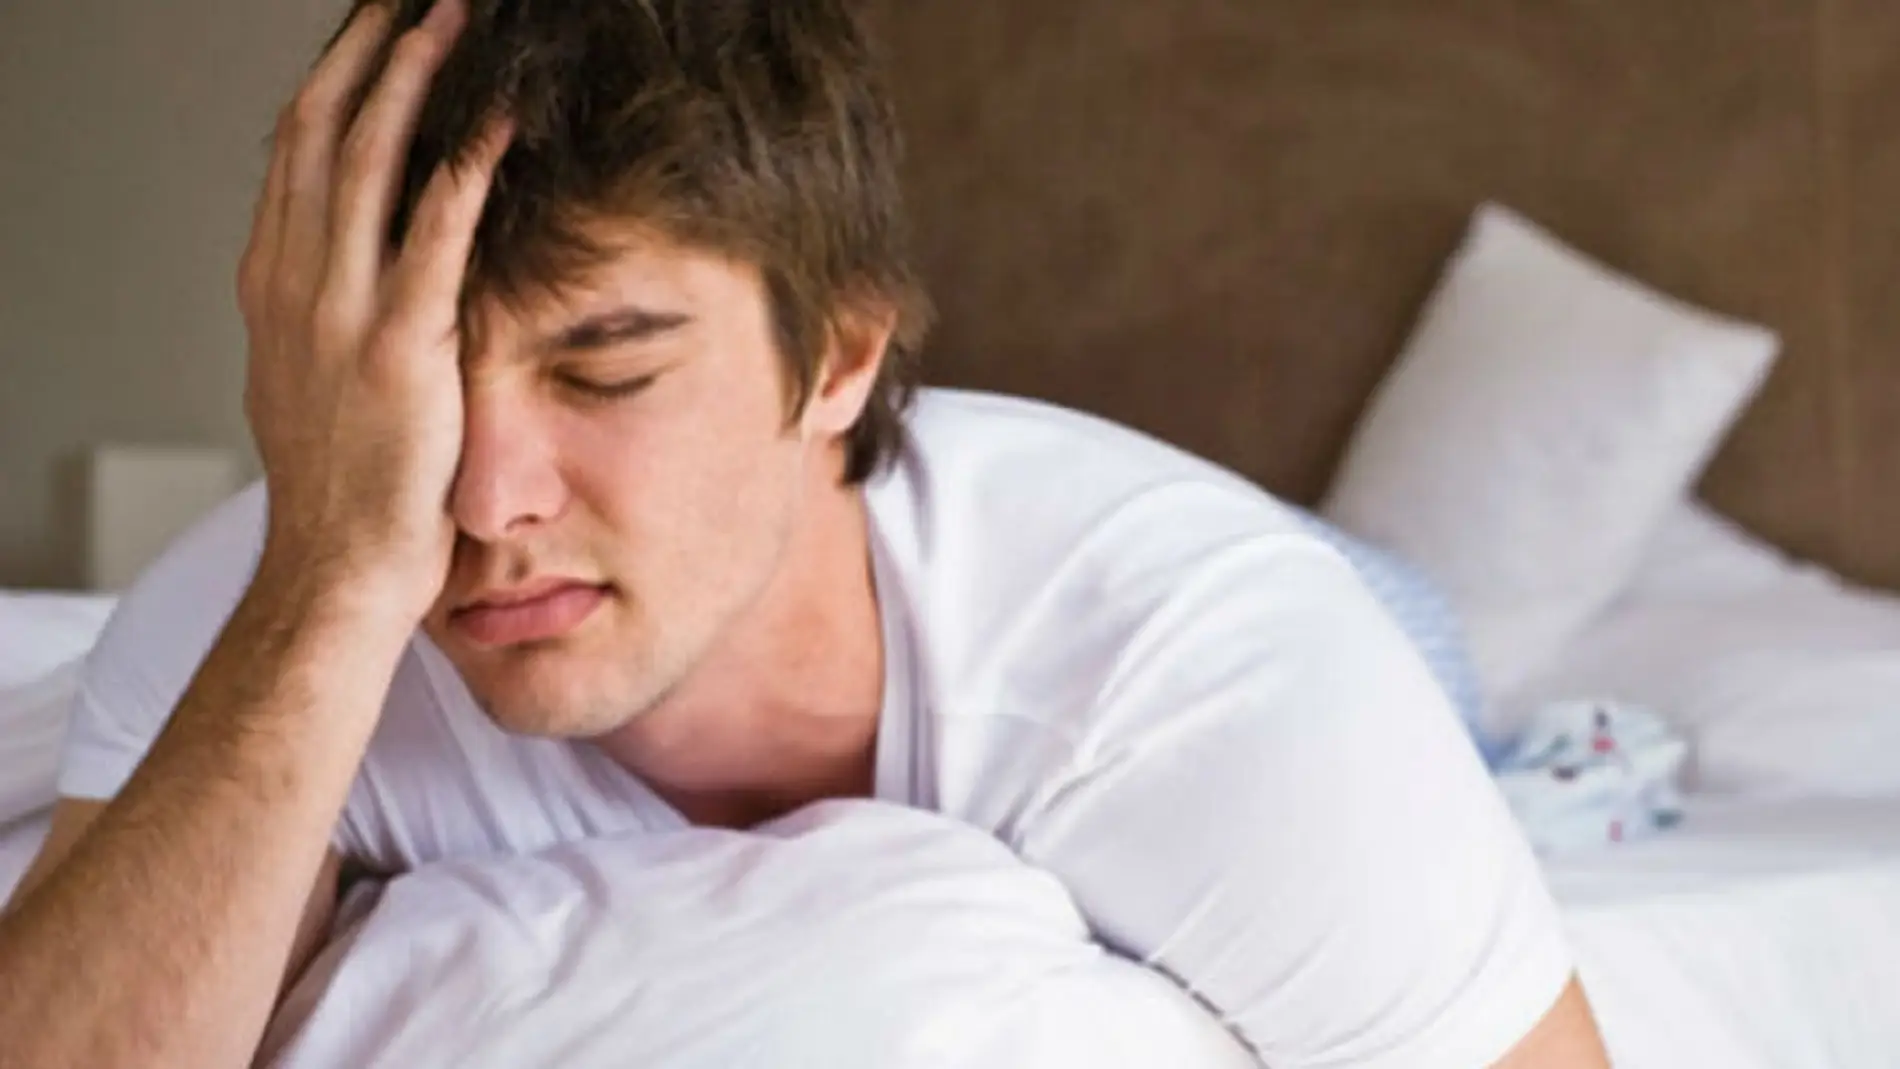 Dormir más tras una lesión cerebral podría ayudar a prevenir daños 